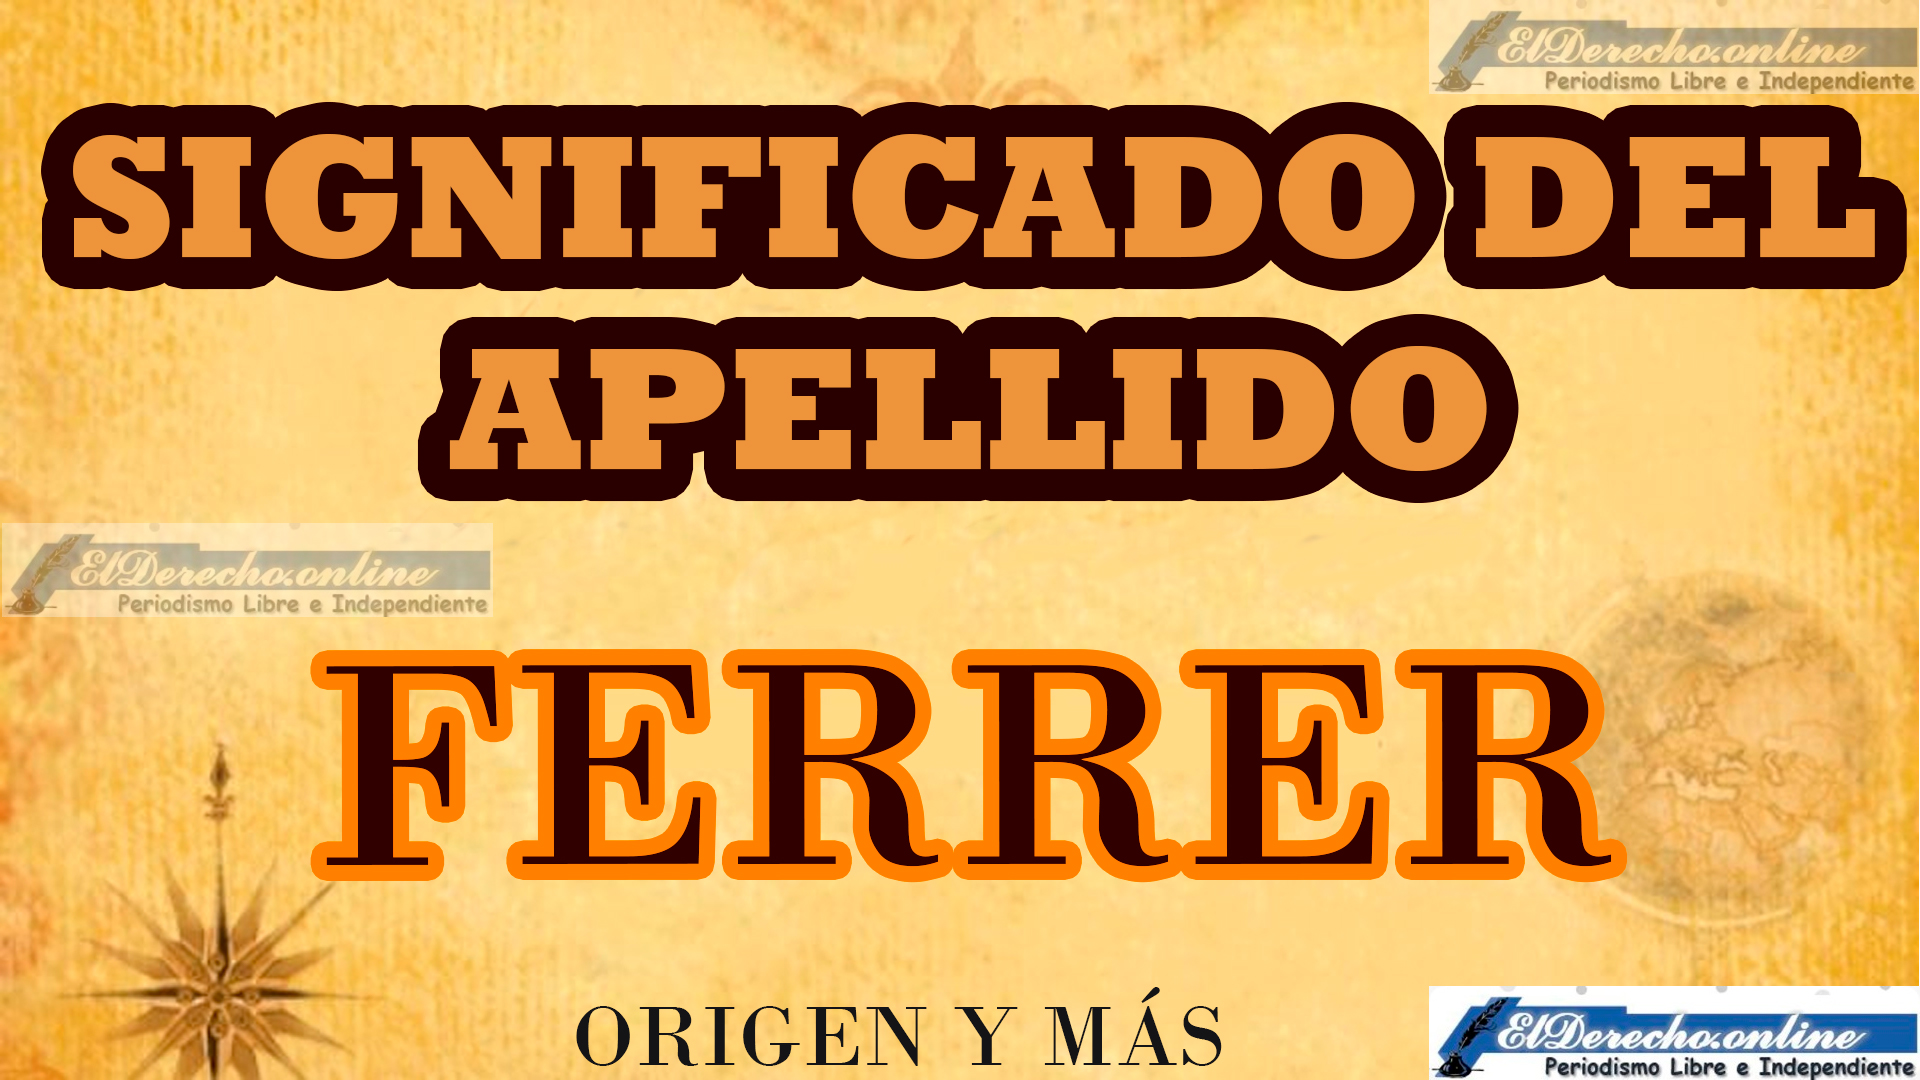 Significado del apellido Ferrer, Origen y más